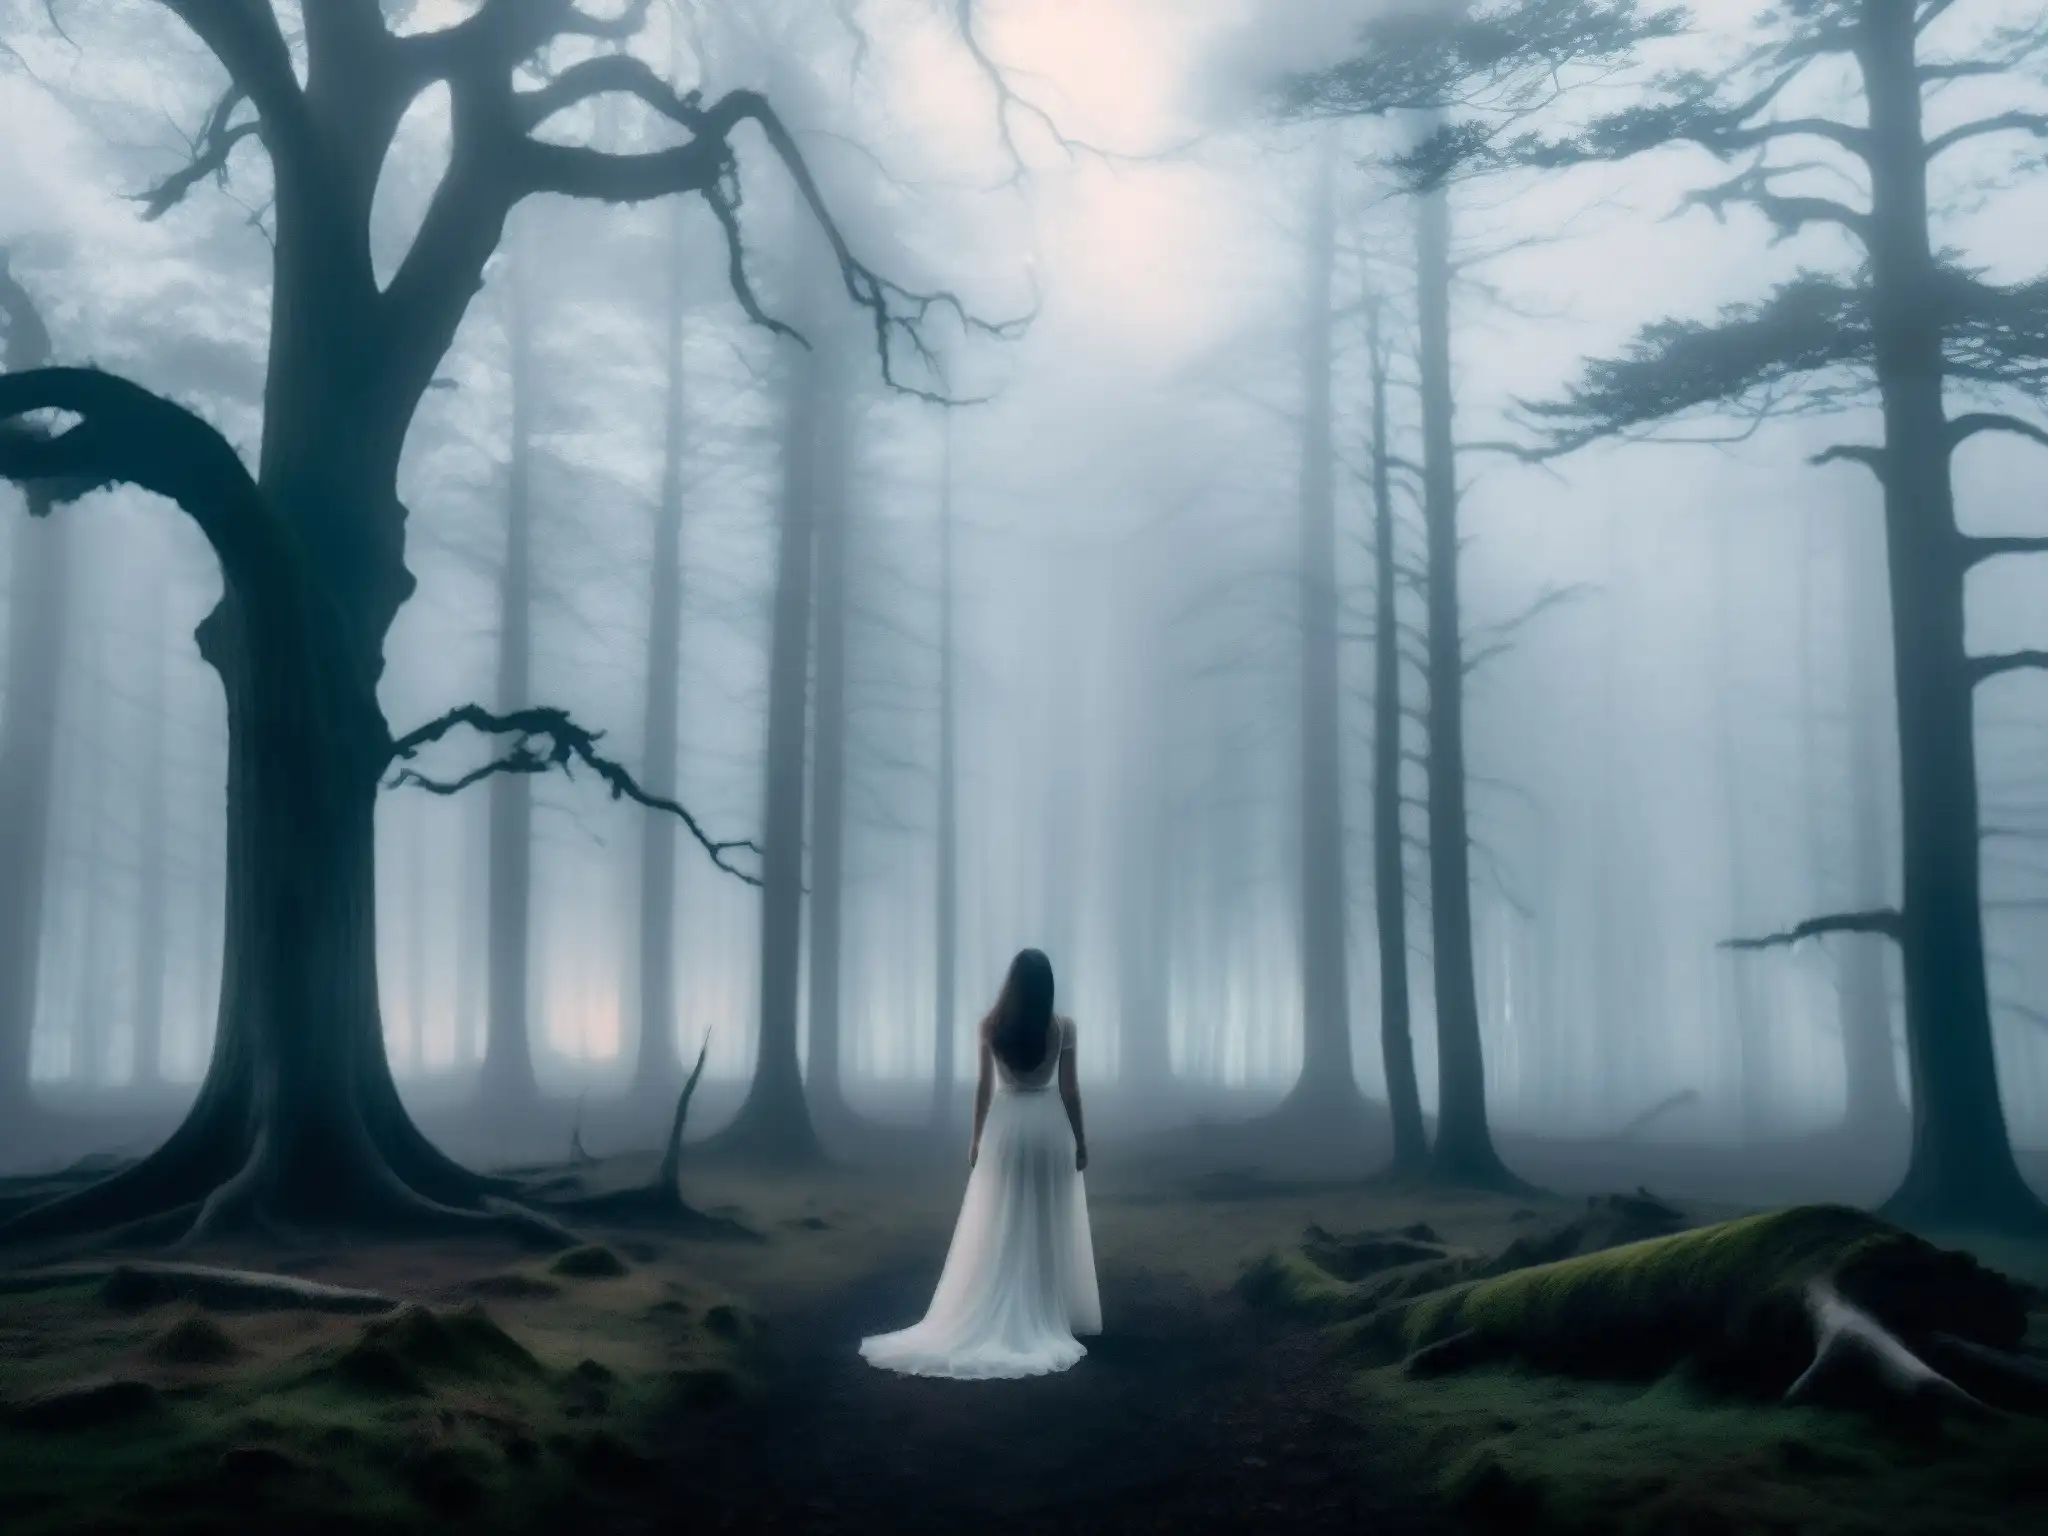 En un bosque brumoso al anochecer, la Dama de Blanco aparece entre la neblina, evocando misterio y presencia sobrenatural